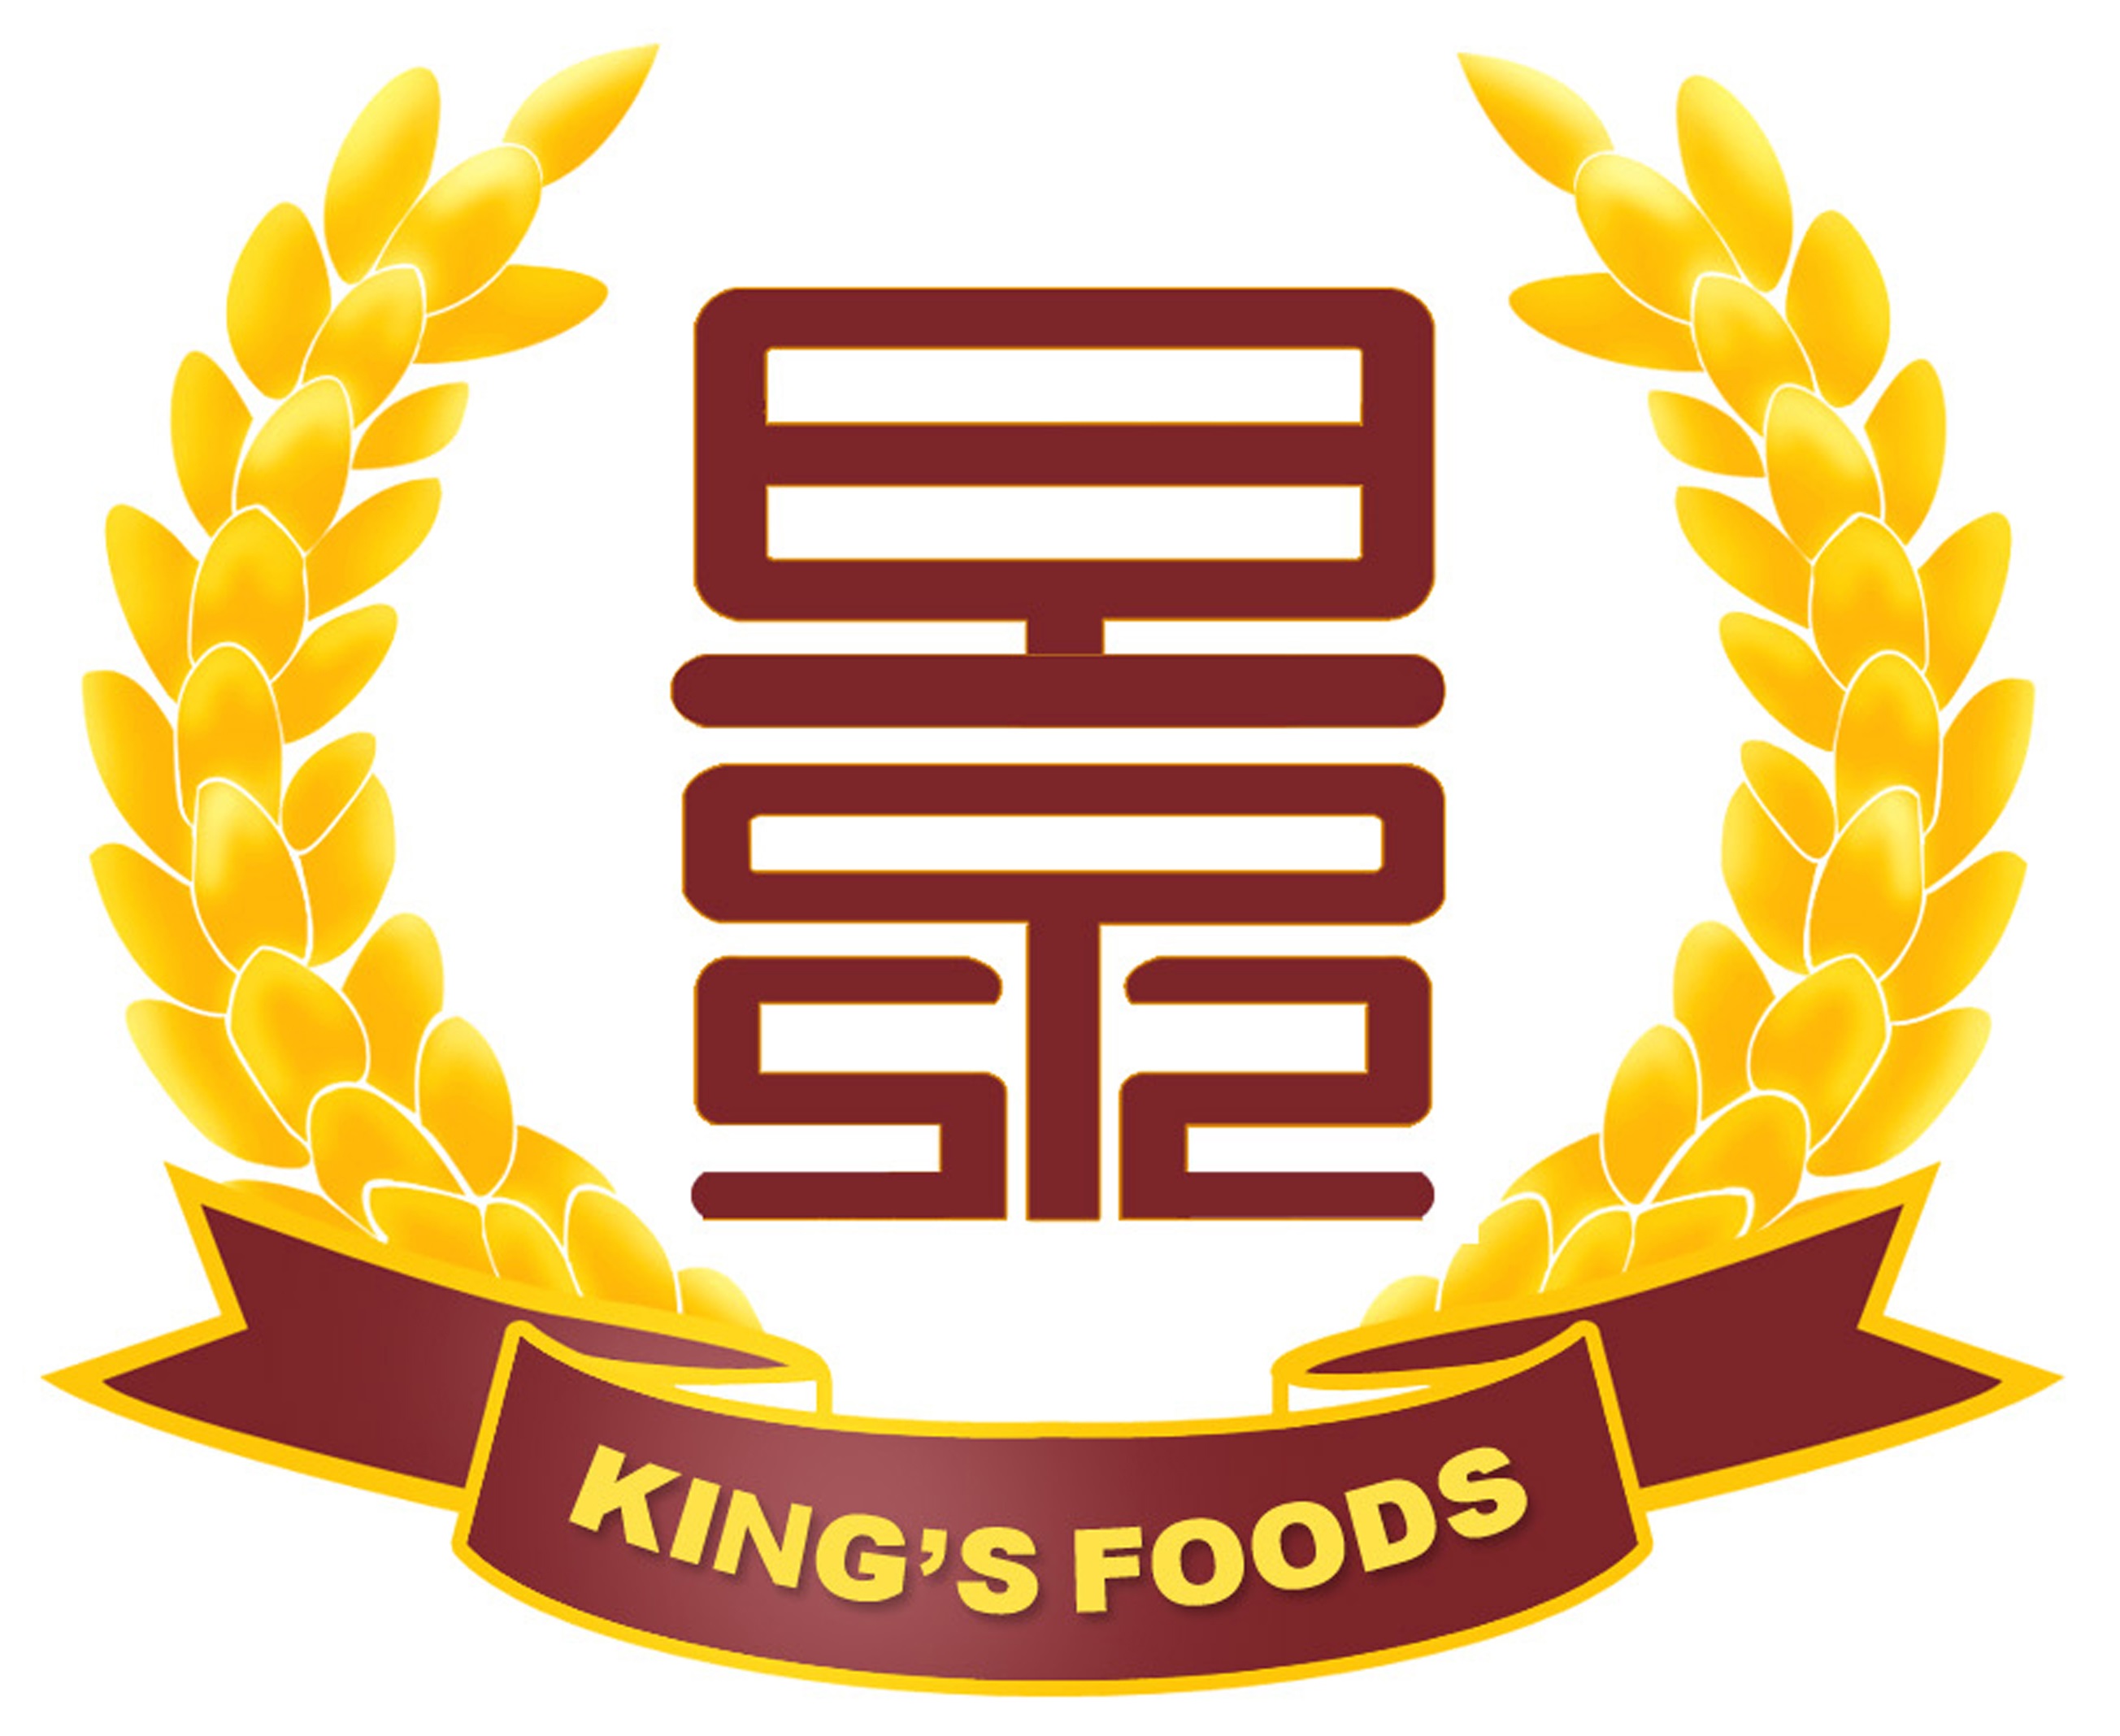 King's Foods Shuyang Ltd.